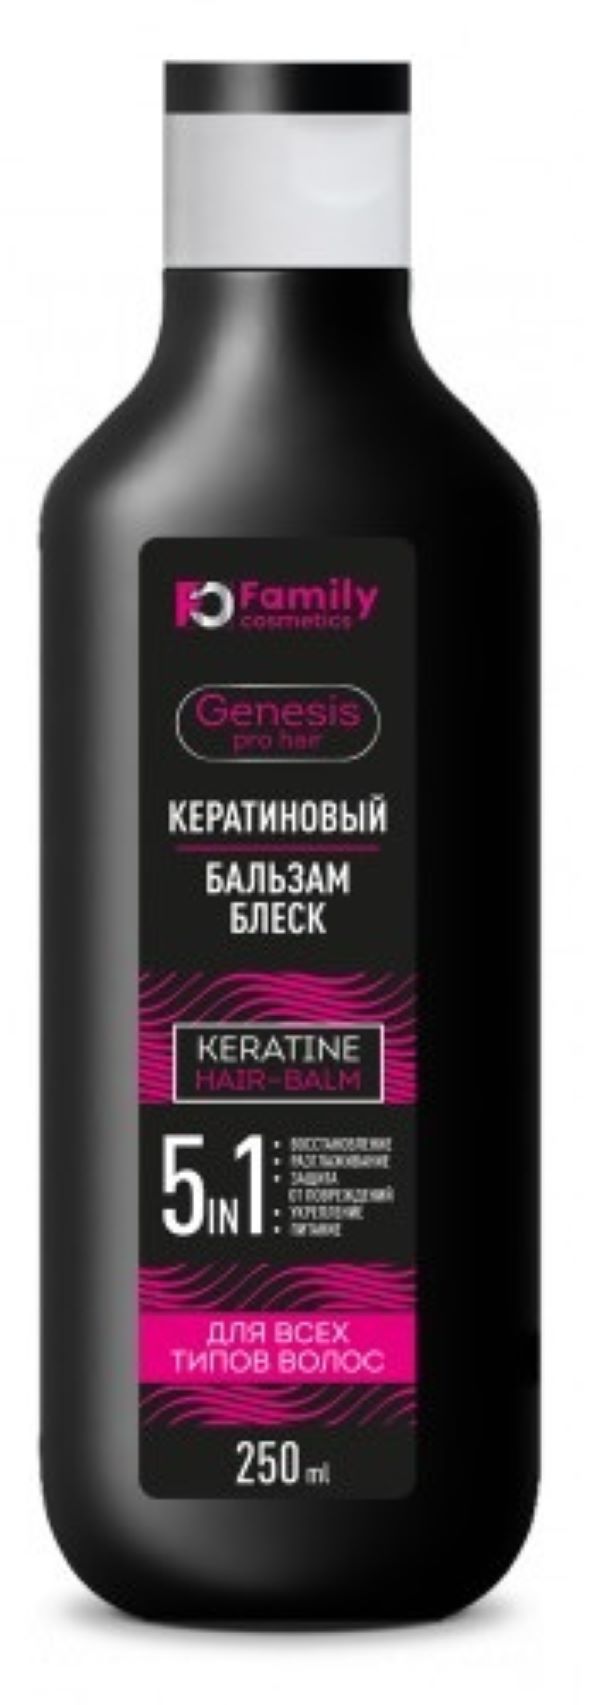 Бальзам Family Cosmetics кератиновый для всех типов волос, 250 мл х 2шт. бальзам для волос family cosmetics с маслами восстанавливающий 570 мл